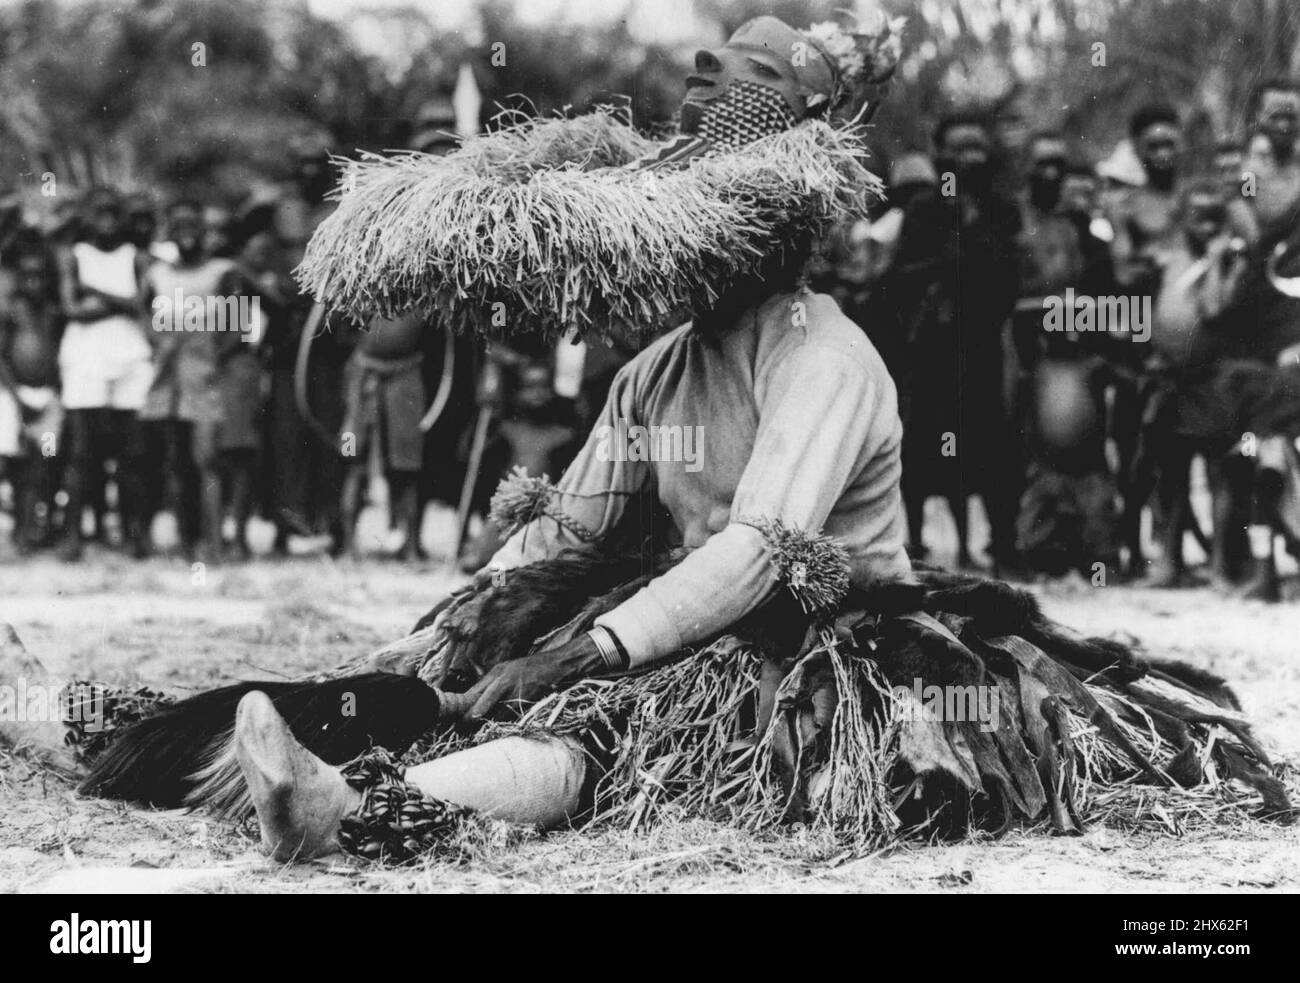 Kongo Folklore -- Ein müder 'Kore' ruht nach einer Aufführung im Mbuya-Tanz des Bapende Tribe. Dieser Tanz ist ein afrikanisches Folklore-"Spiel" mit bis zu zwanzig Charakteren. Kore ist die Personifizierung der Antilope. Er ist wichtig bei der Aussaat und Ernte, wenn er den Segen der Götter fordert. Er trägt einen Rock aus Bast und Affenfellen, bärtige Maske und trägt einen Antilopenschwanz. Er tanzt mit antielpenähnlichen Sprüngen. Die Folklore Afrikas liegt nicht in Büchern, sondern im rhythmischen Tri Stockfoto